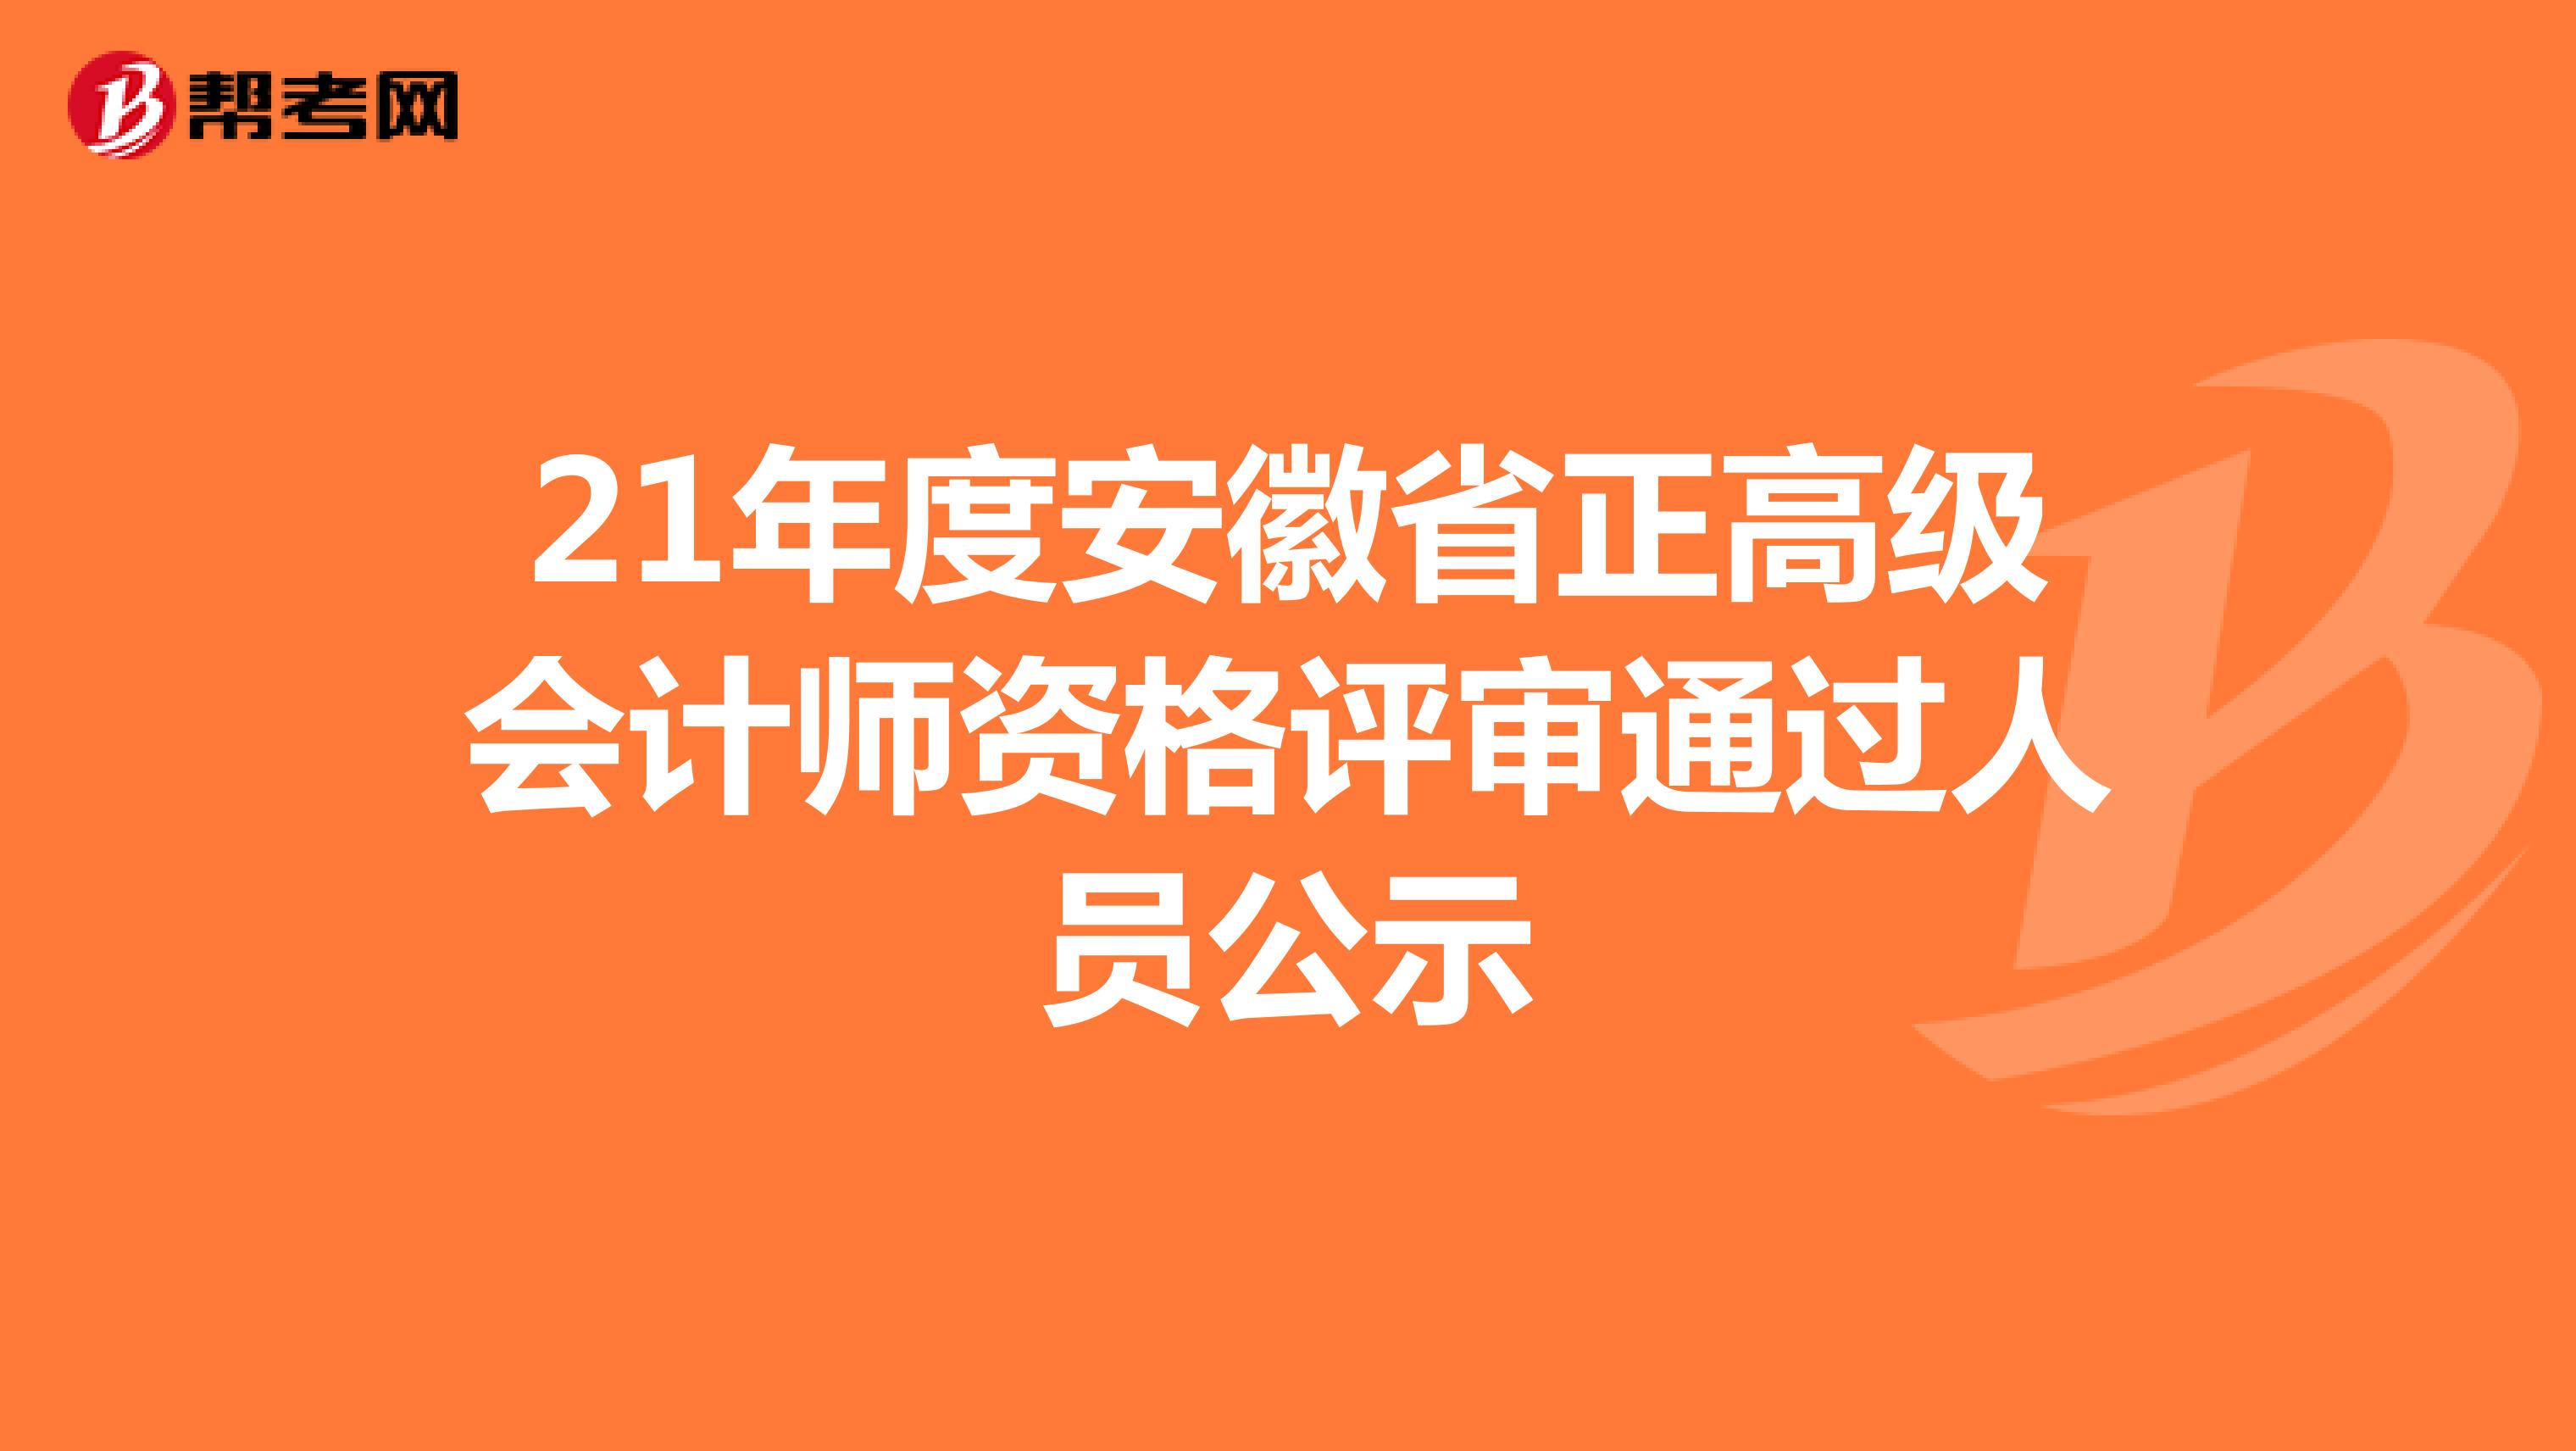 21年度安徽省正高级会计师资格评审通过人员公示